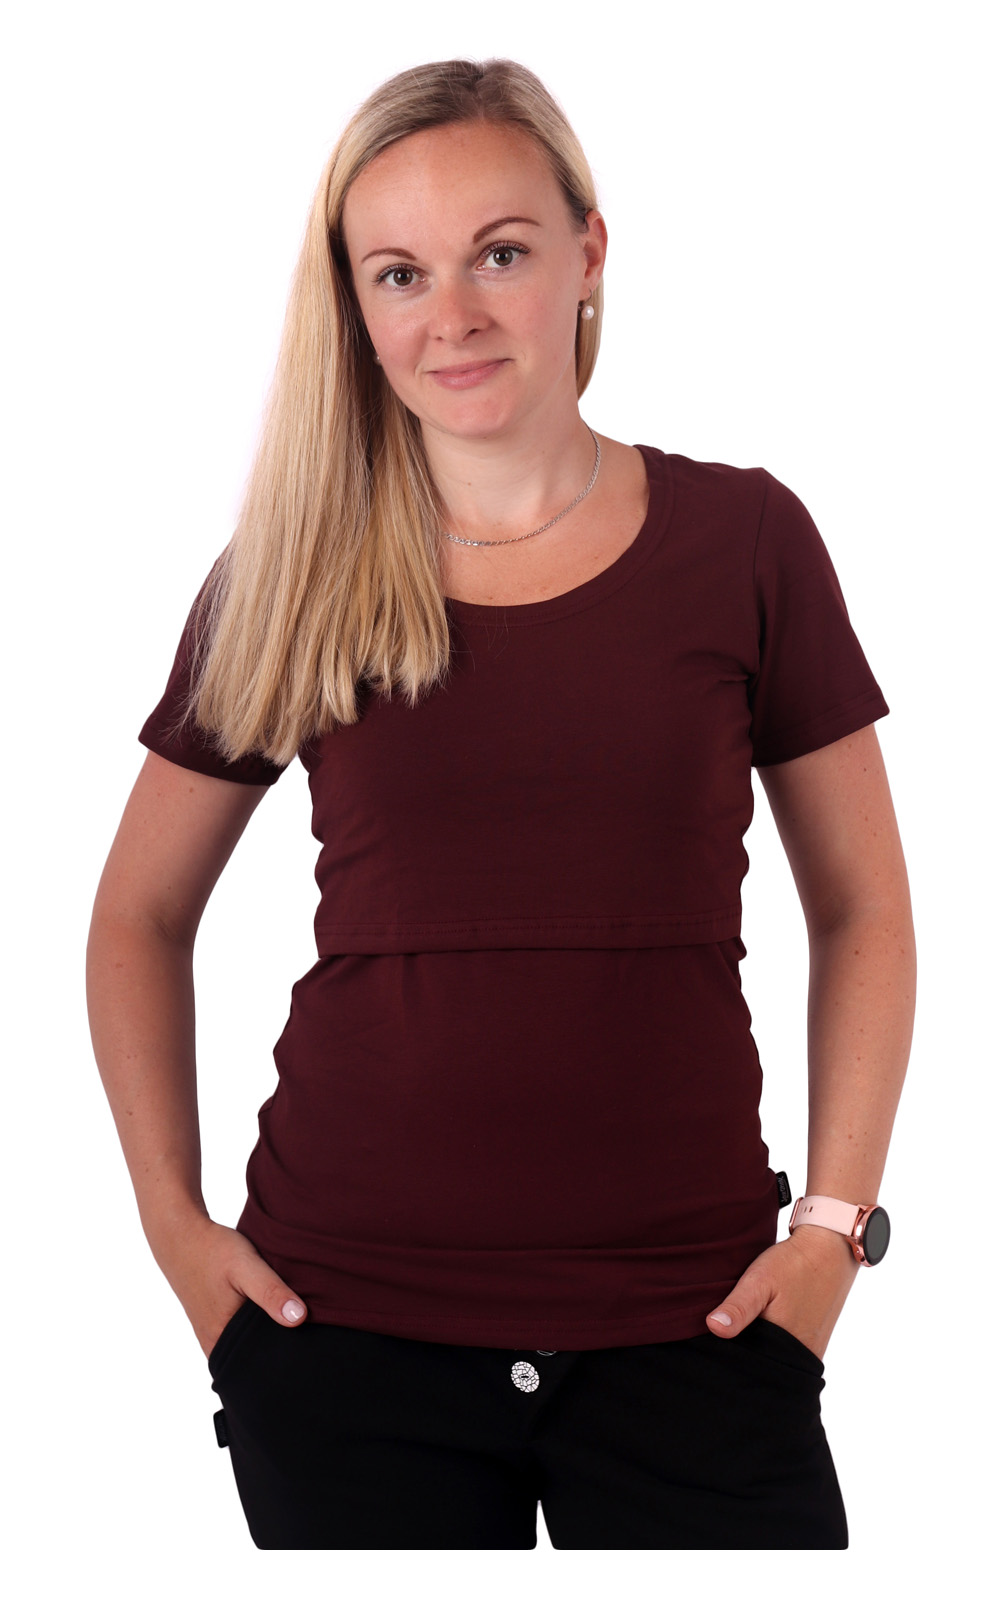 Breast-feeding T-shirt Katerina, short sleeves, BORDO XS/S